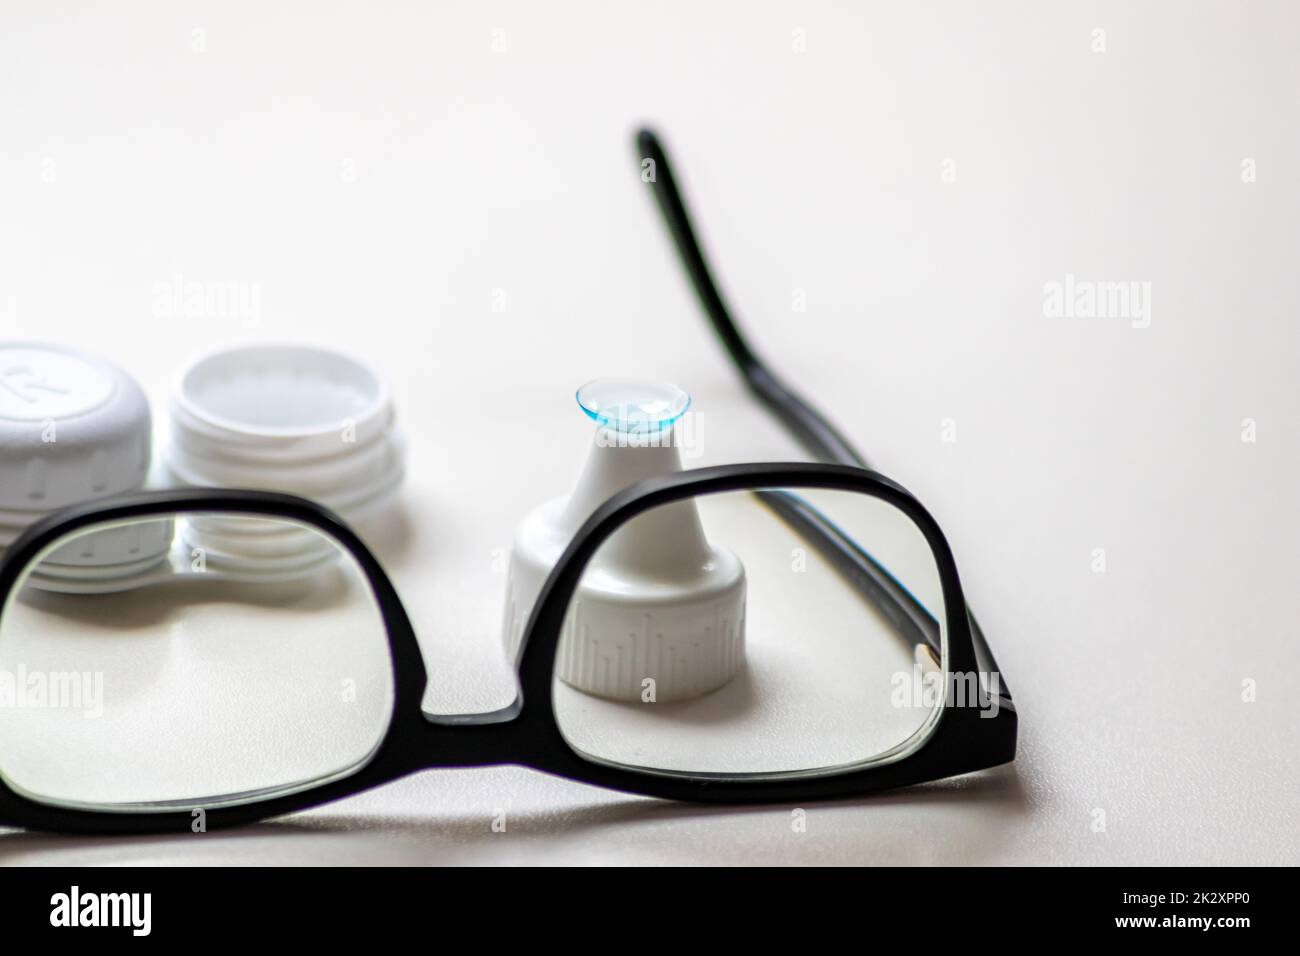 Blaue Kontaktlinse durch die schwarze Brille zeigt verschiedene Brillen, um durch Optometrie Weitsicht und Kurzsichtigkeit zu korrigieren, oder Augenarzt gegen Myopie mit Augenkorrektur für perfektes Sehen Stockfoto